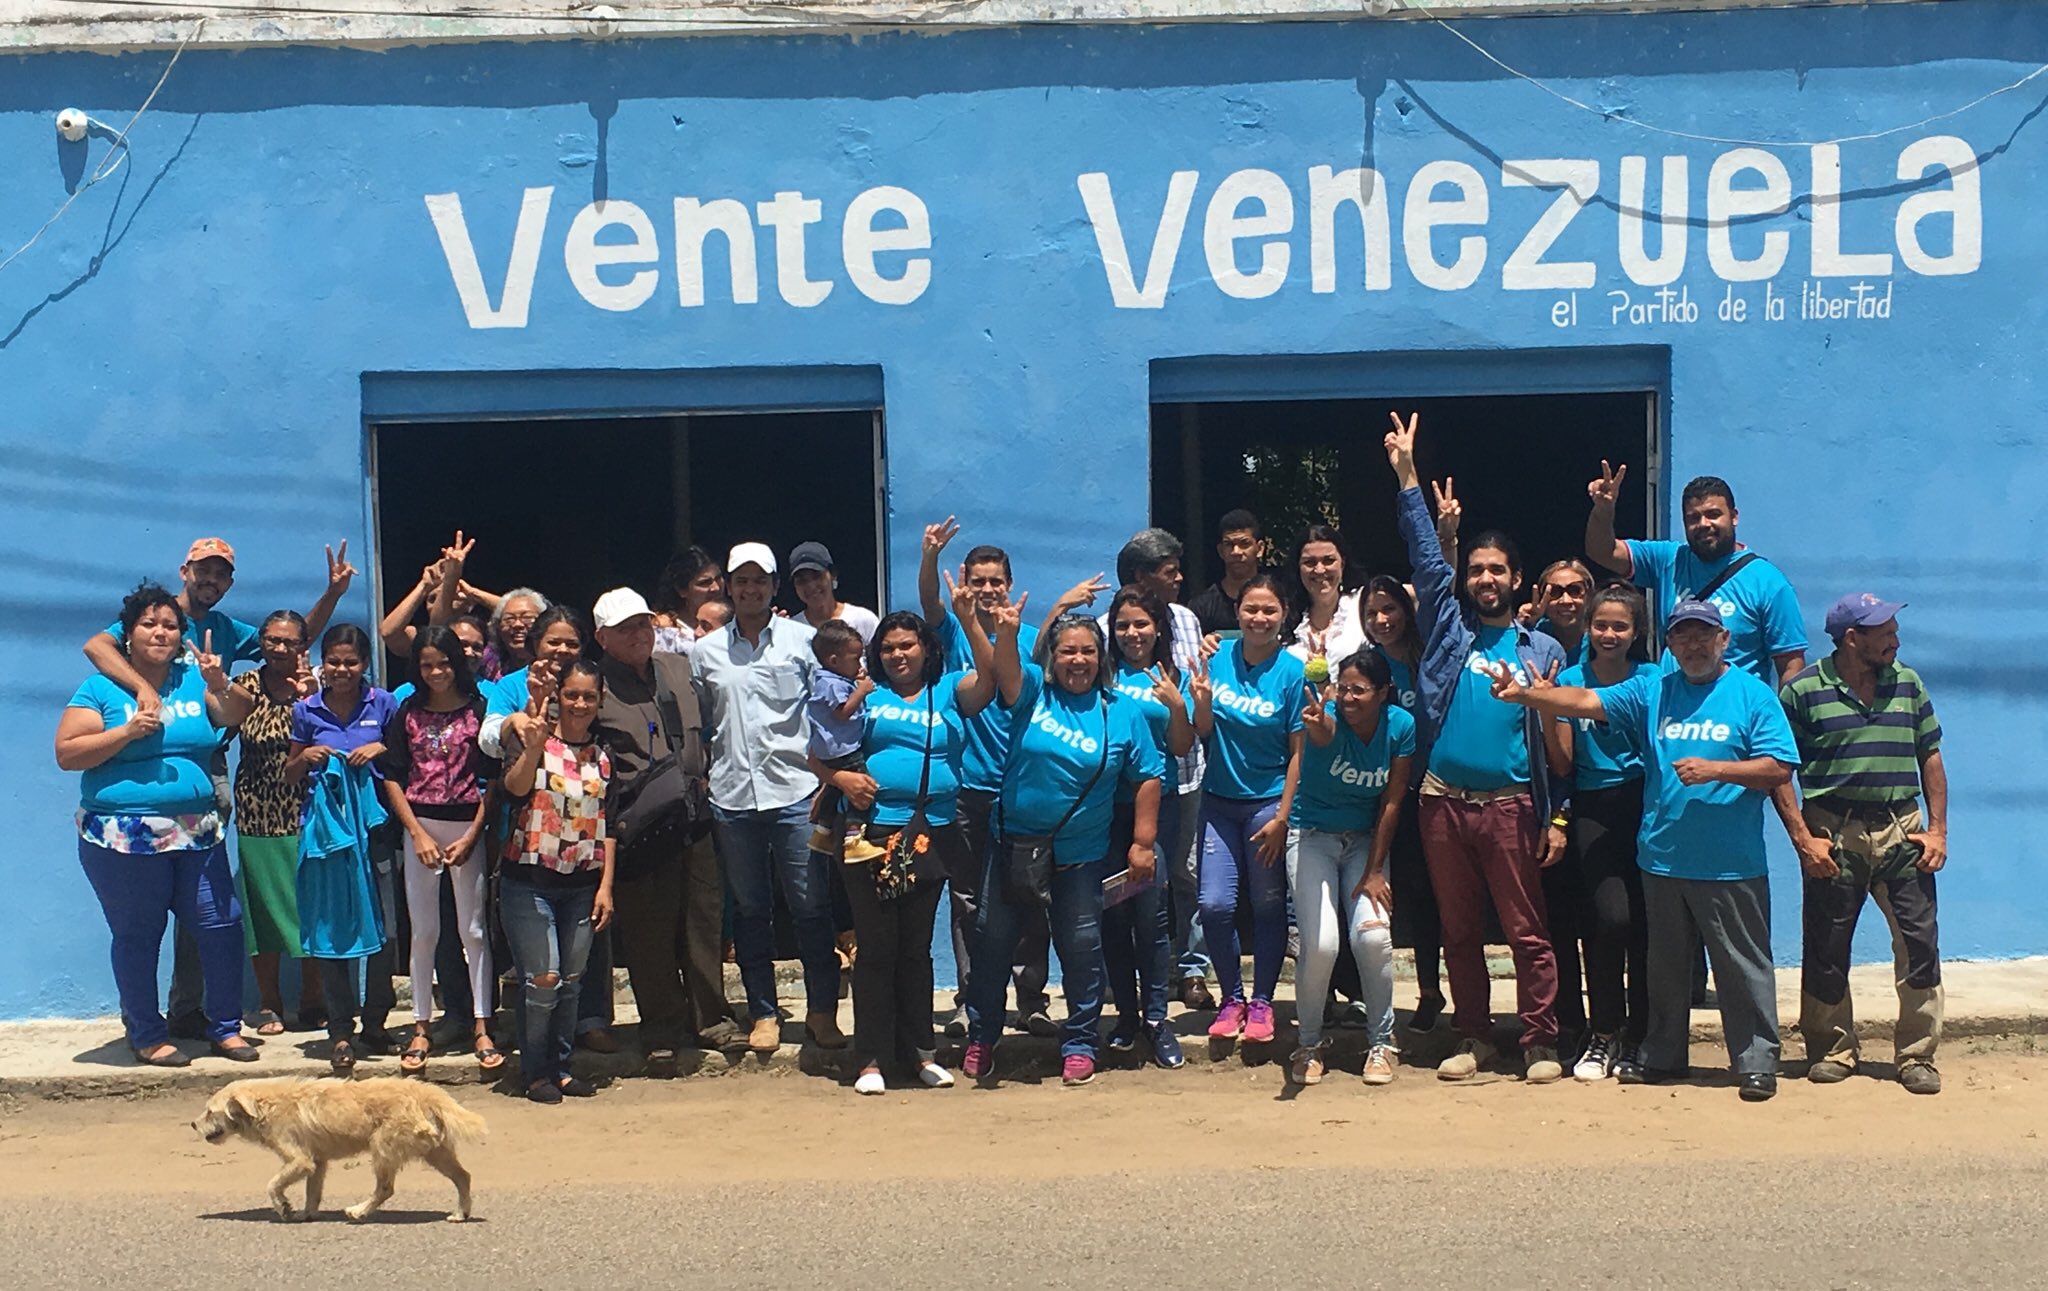 Pedro Antonio De Mendonca: Vente Venezuela se consolida en Guárico porque los guariqueños somos liberales